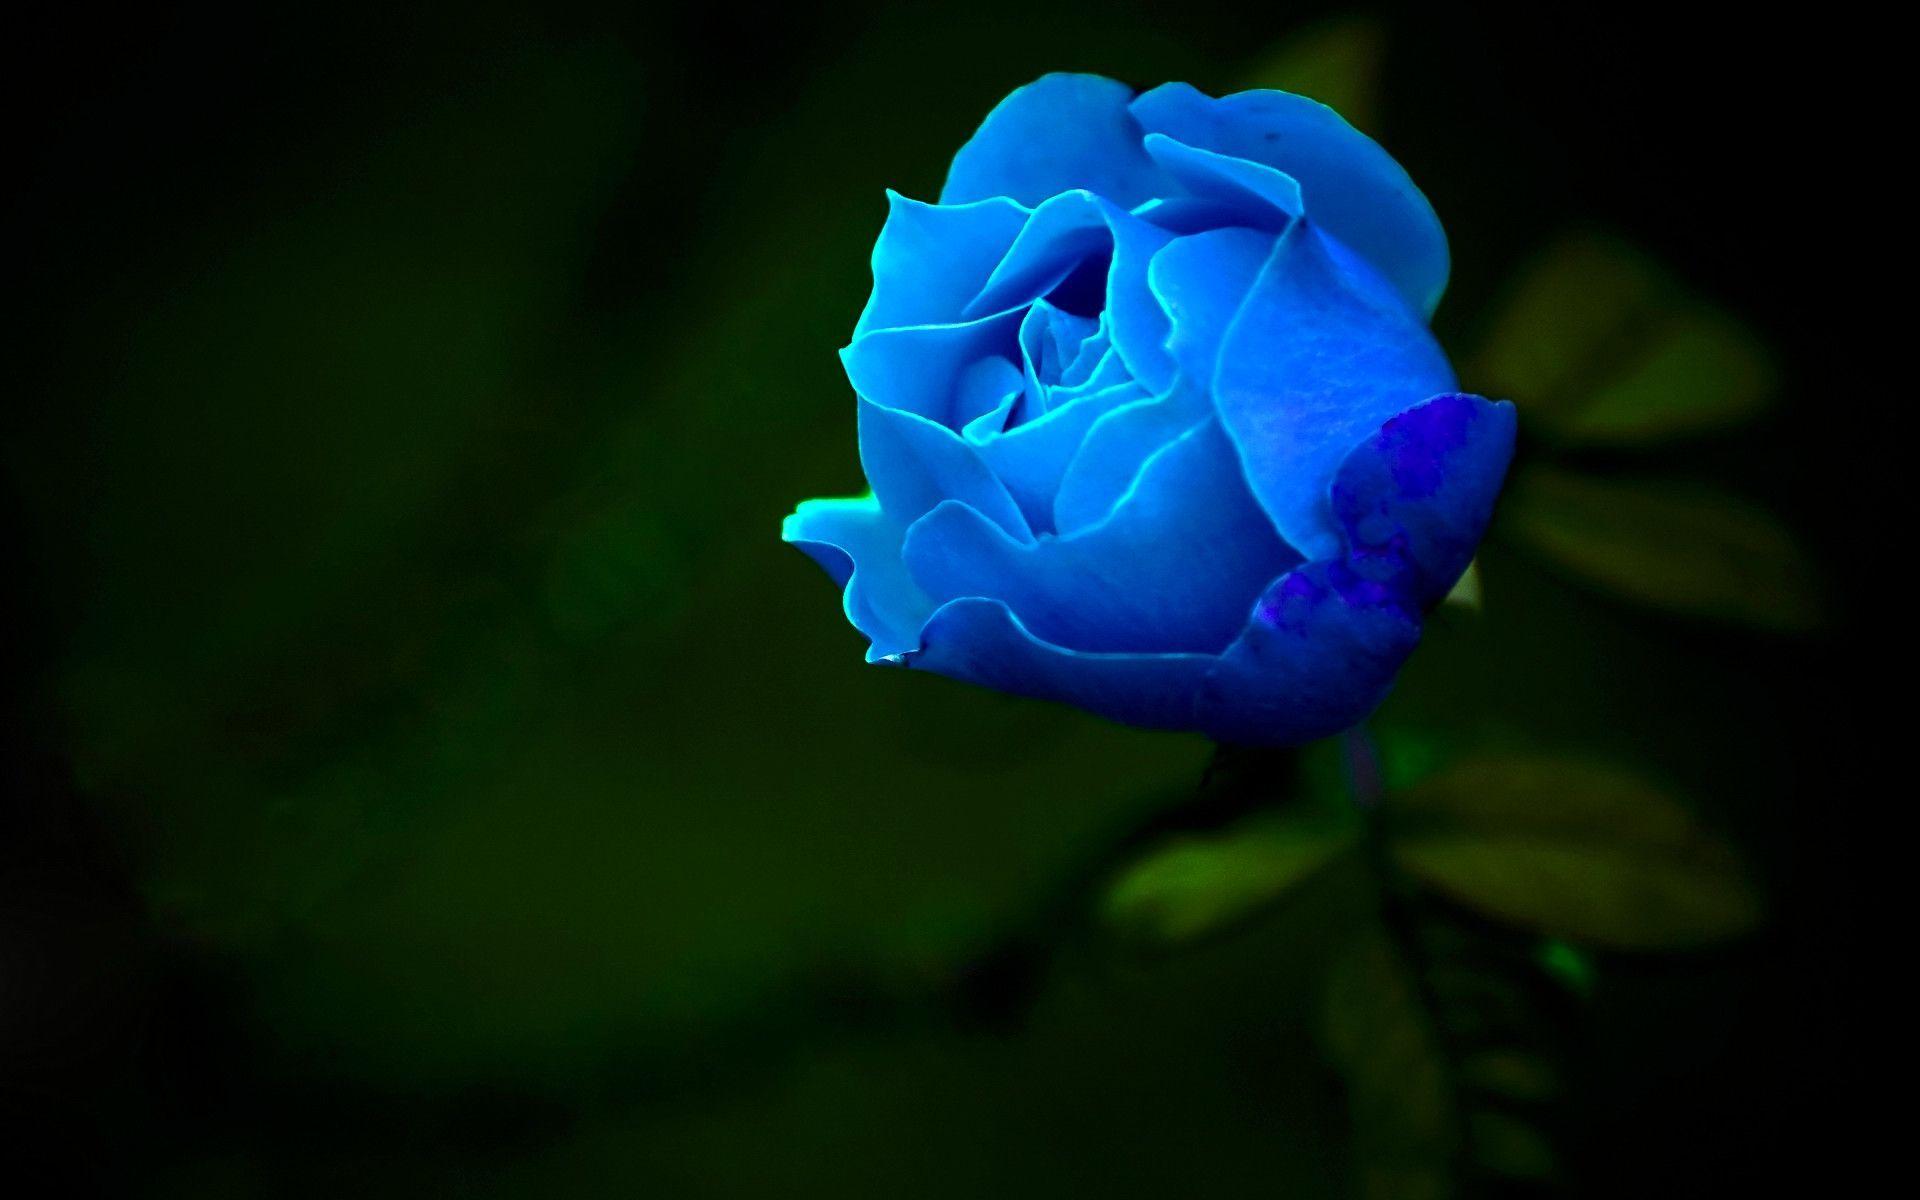 Hoa hồng xanh khiến cho ai nhìn vào cũng đều cảm thấy ngạc nhiên và thích thú. Với màu xanh đặc trưng, hoa hồng xanh thể hiện sự độc đáo và mang lại cảm giác tươi mới cho không gian của bạn. Một họa tiết hoa hồng xanh sẽ khiến cho bức ảnh của bạn trở nên độc đáo và thu hút.